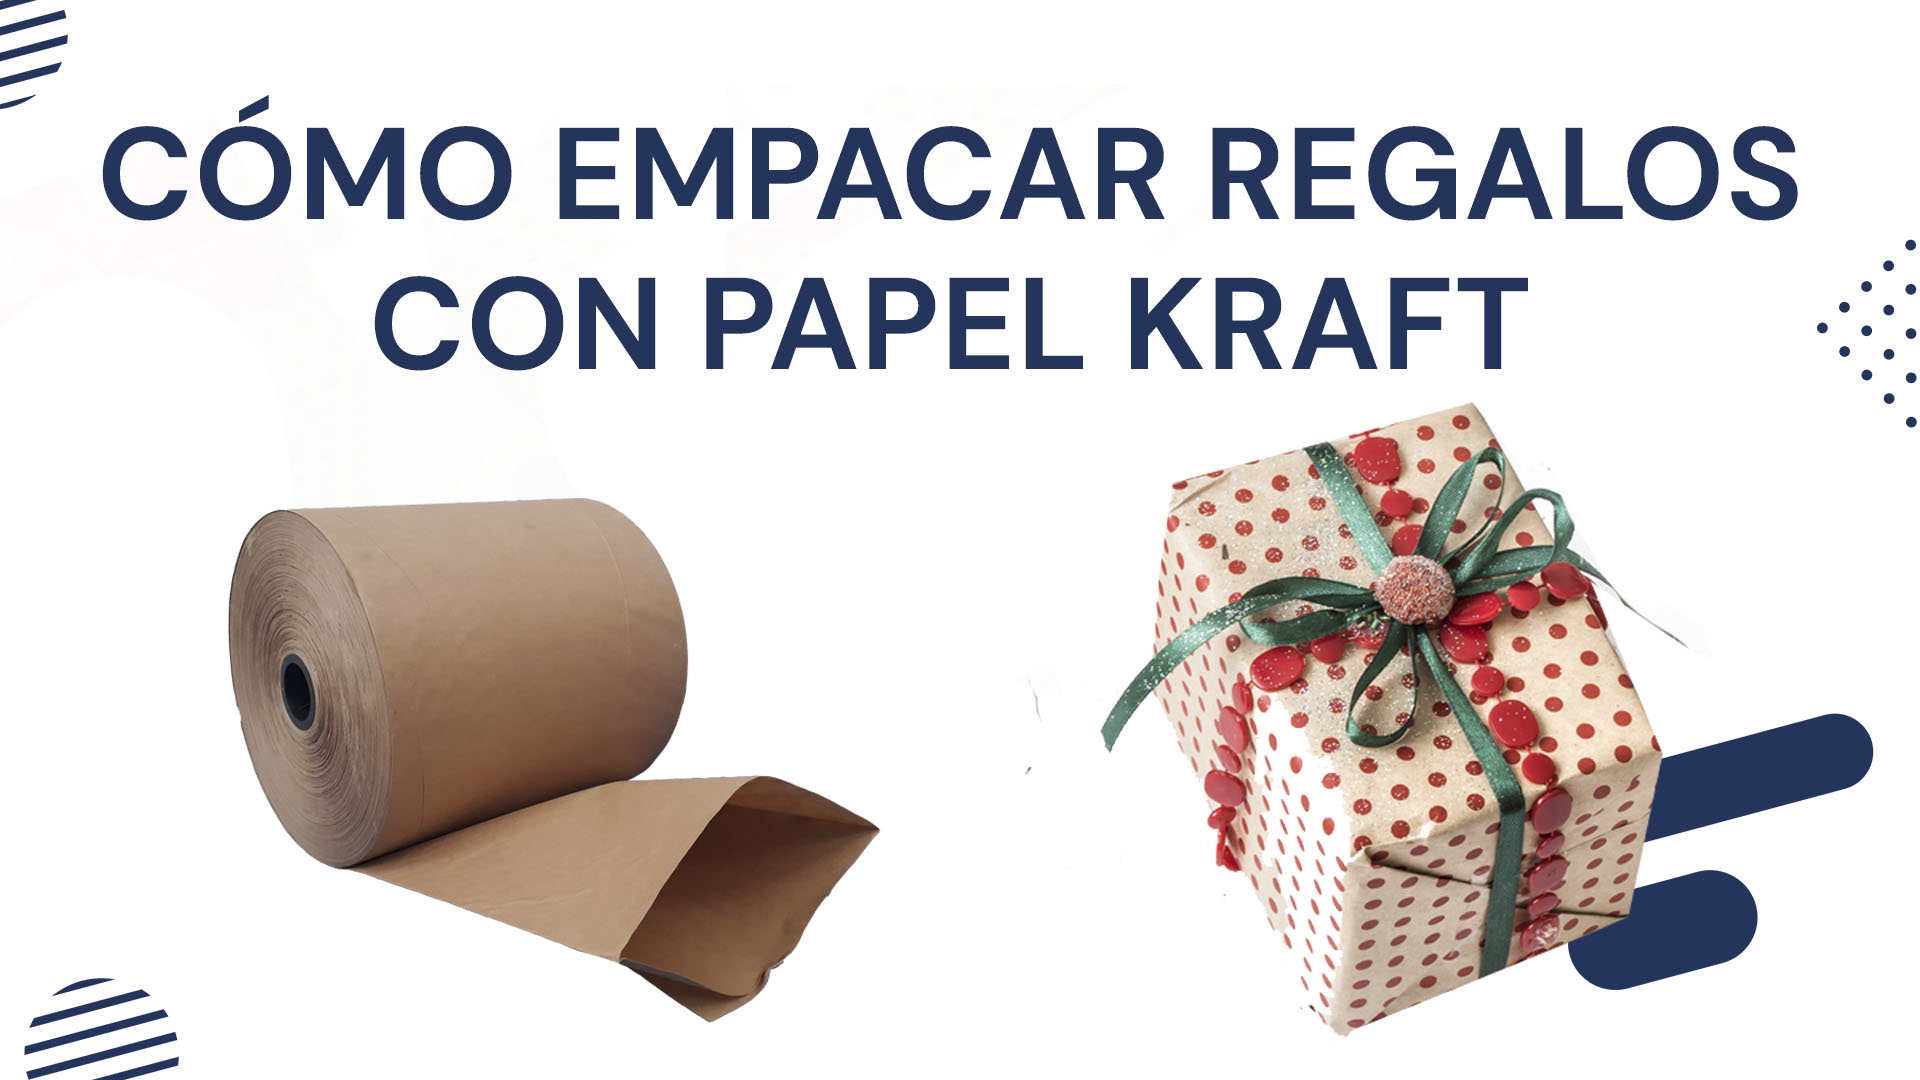 Cómo empacar regalos con papel Kraft Cómo empacar regalos con papel Kraft